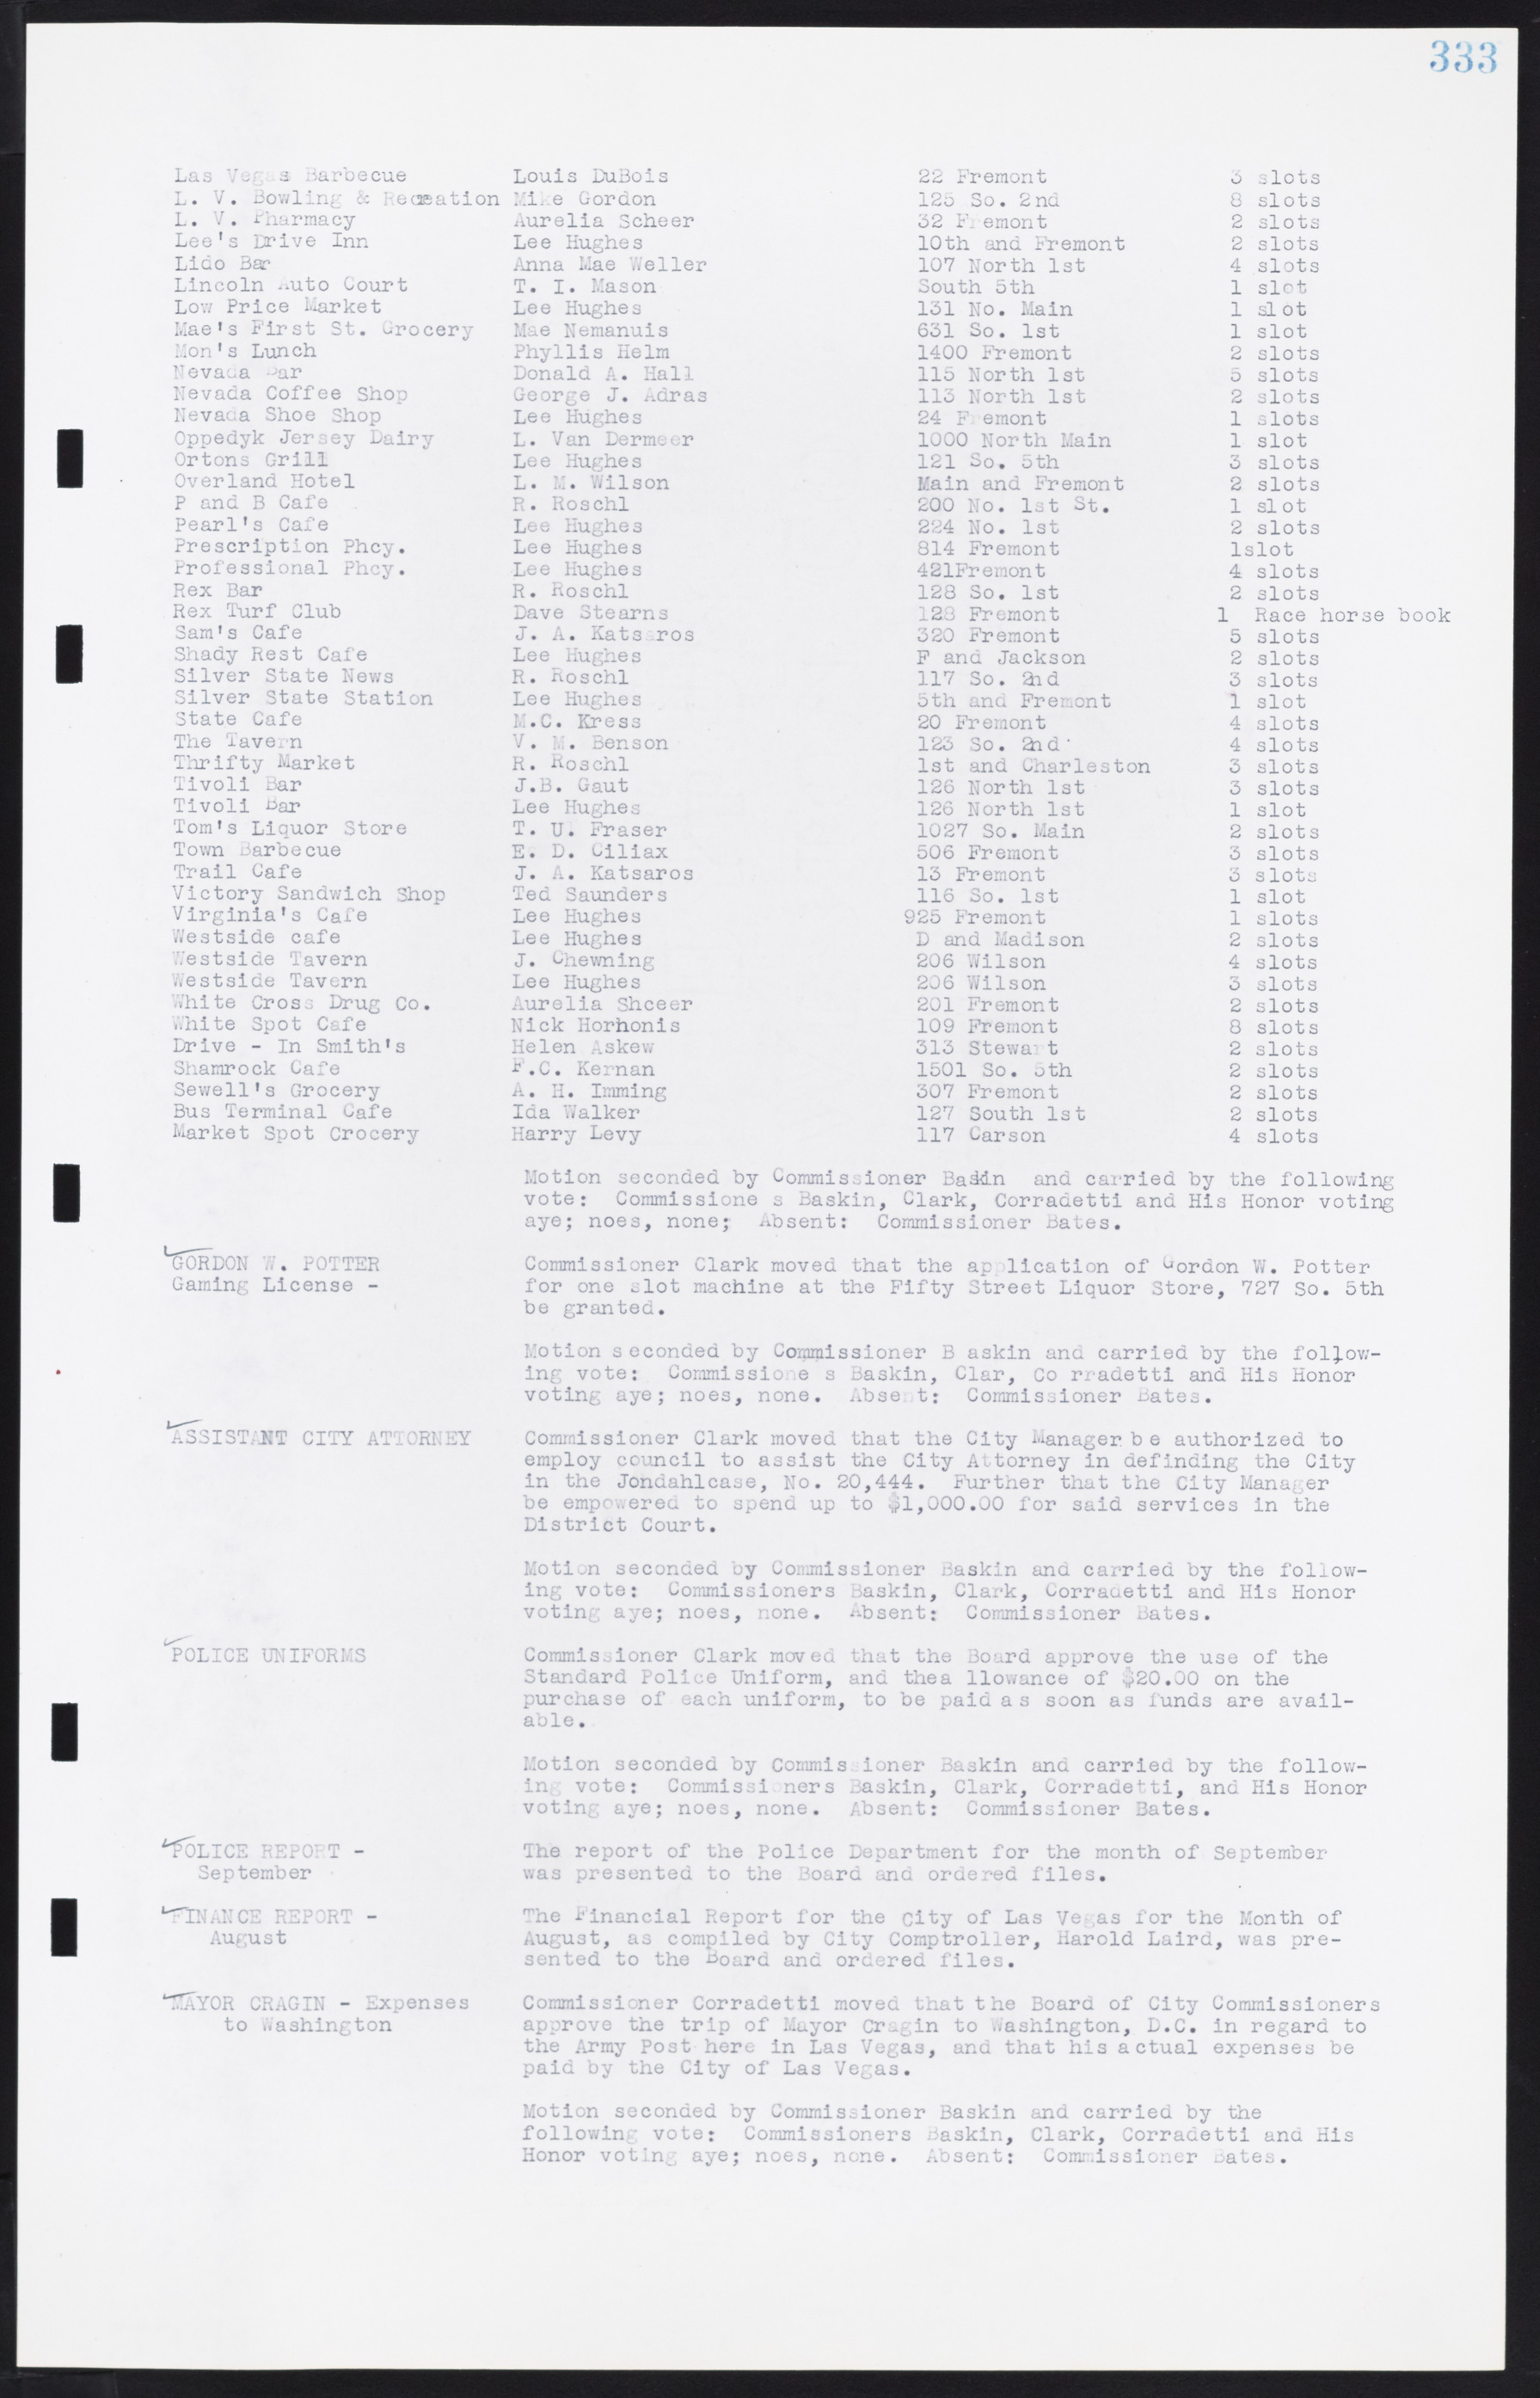 Las Vegas City Commission Minutes, August 11, 1942 to December 30, 1946, lvc000005-357